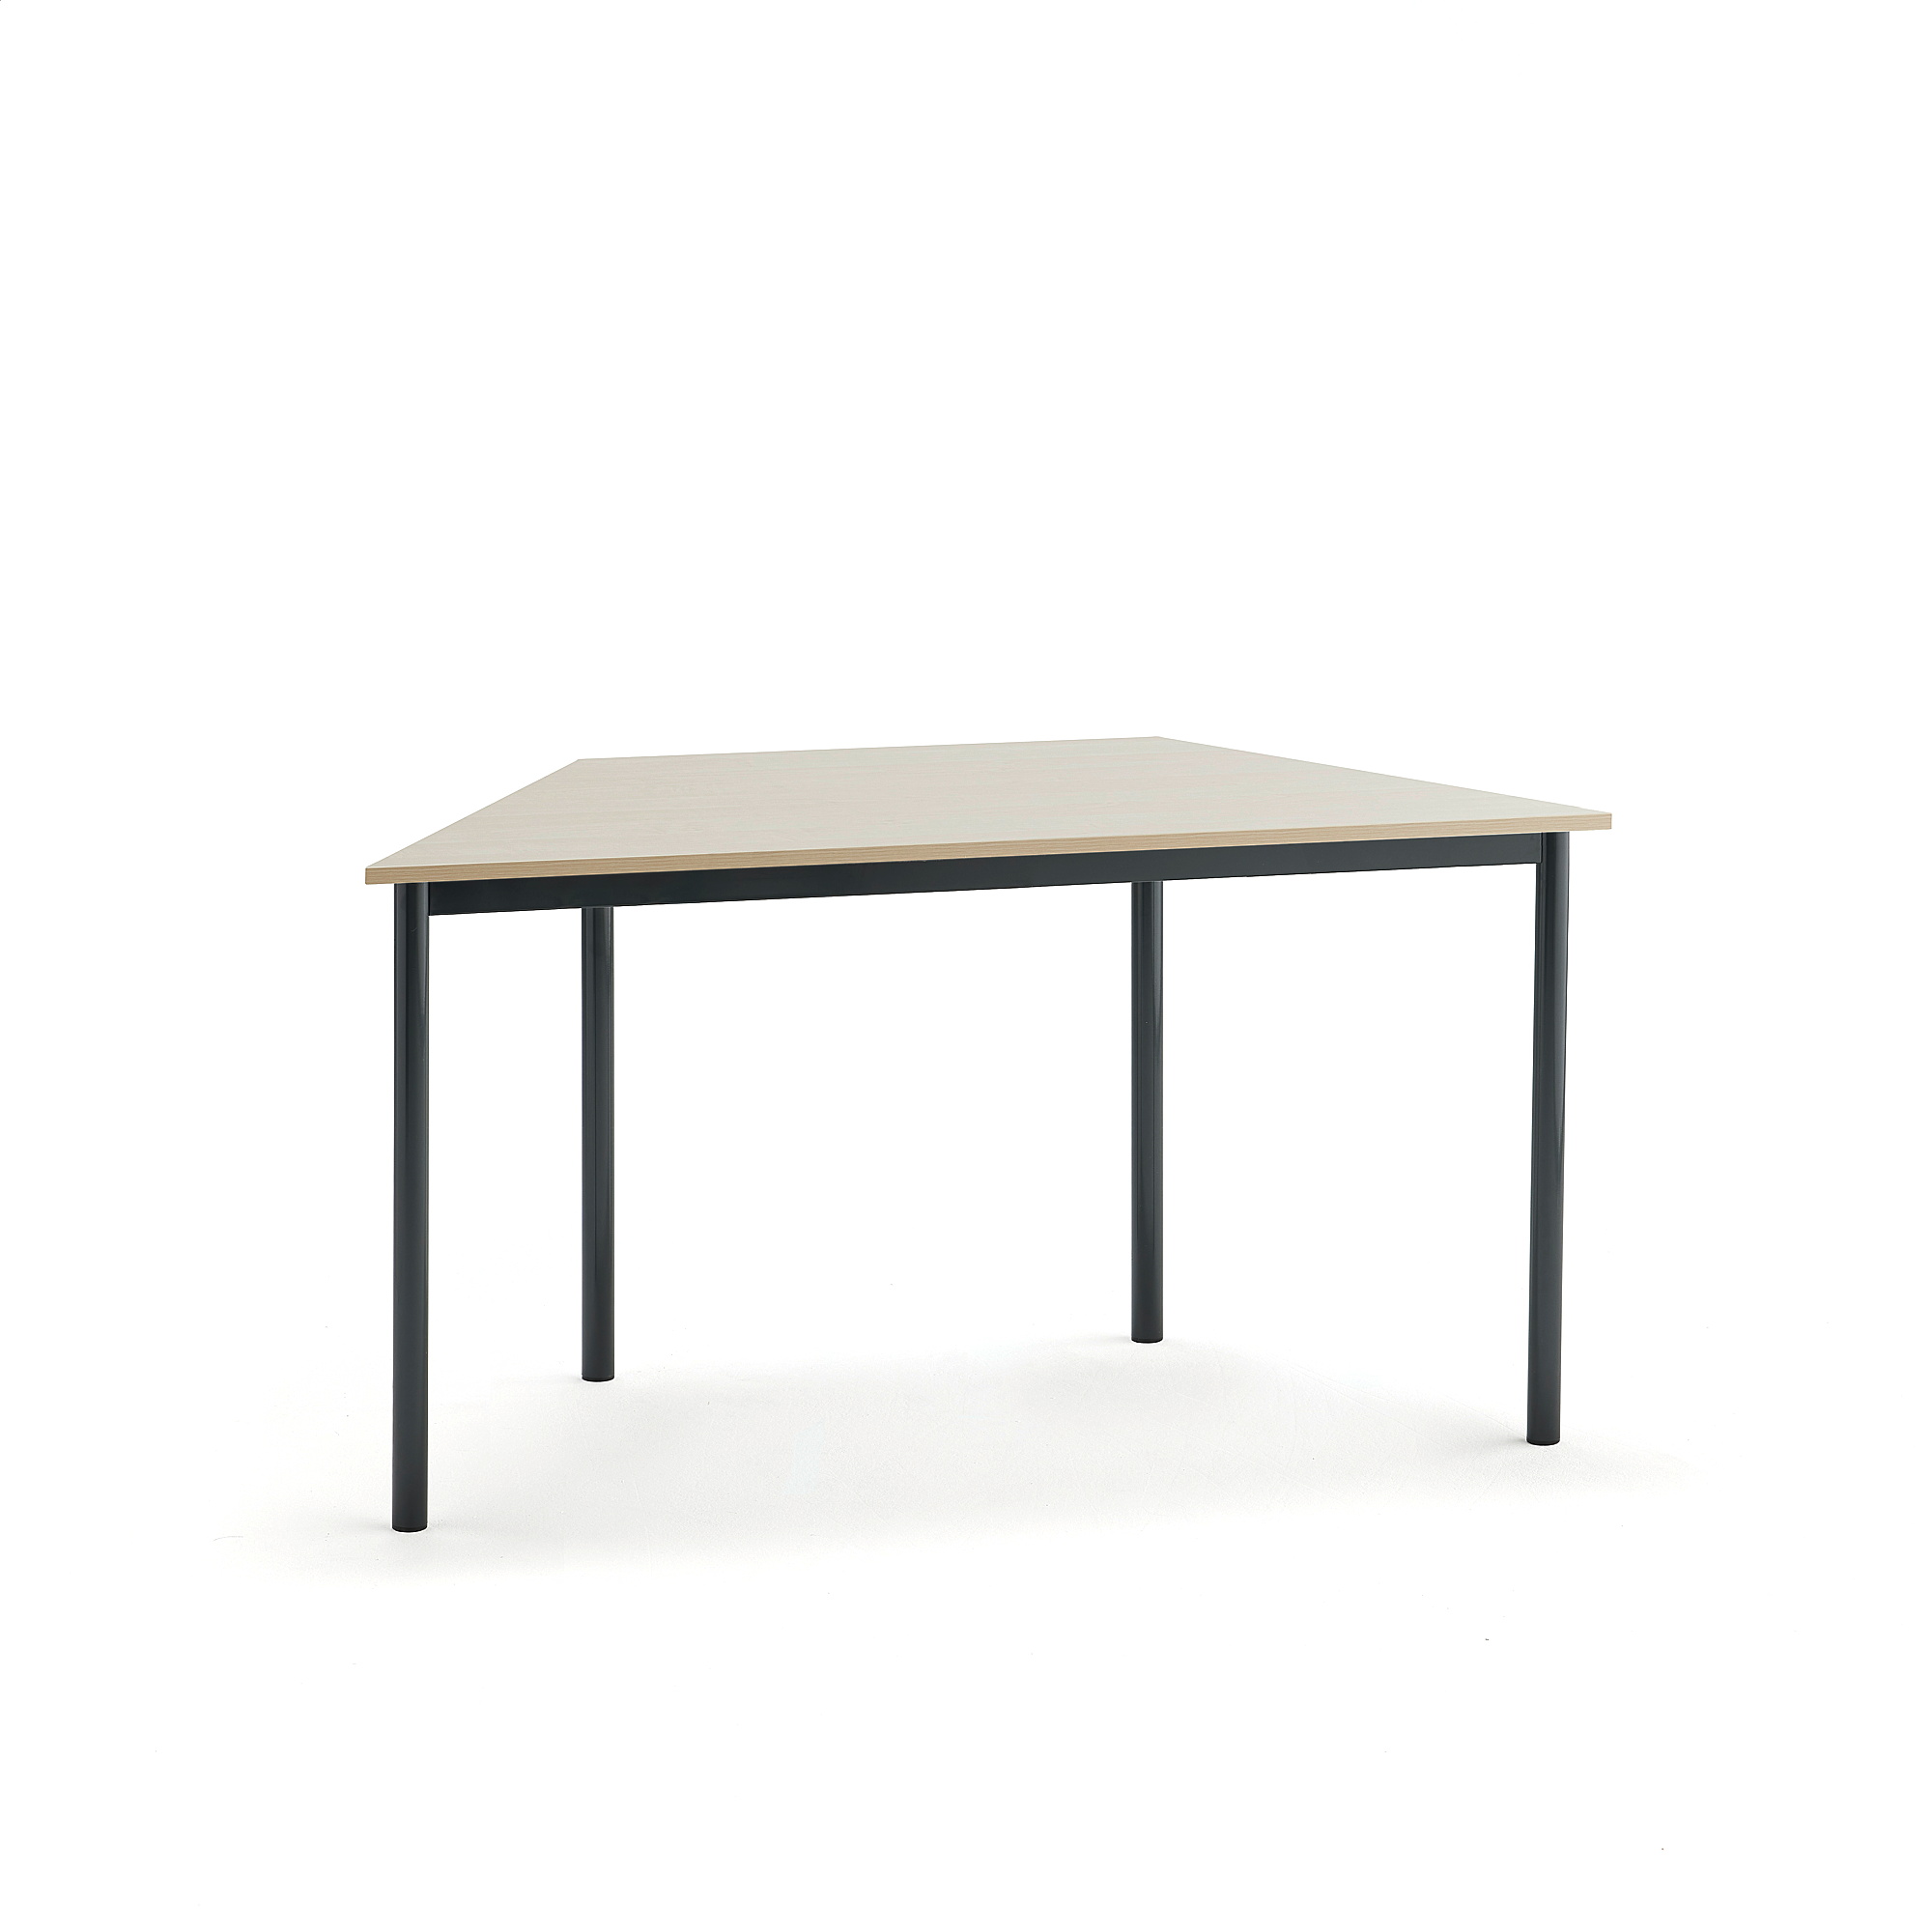 Stůl BORÅS TRAPETS, 1200x600x720 mm, antracitově šedé nohy, HPL deska, bříza